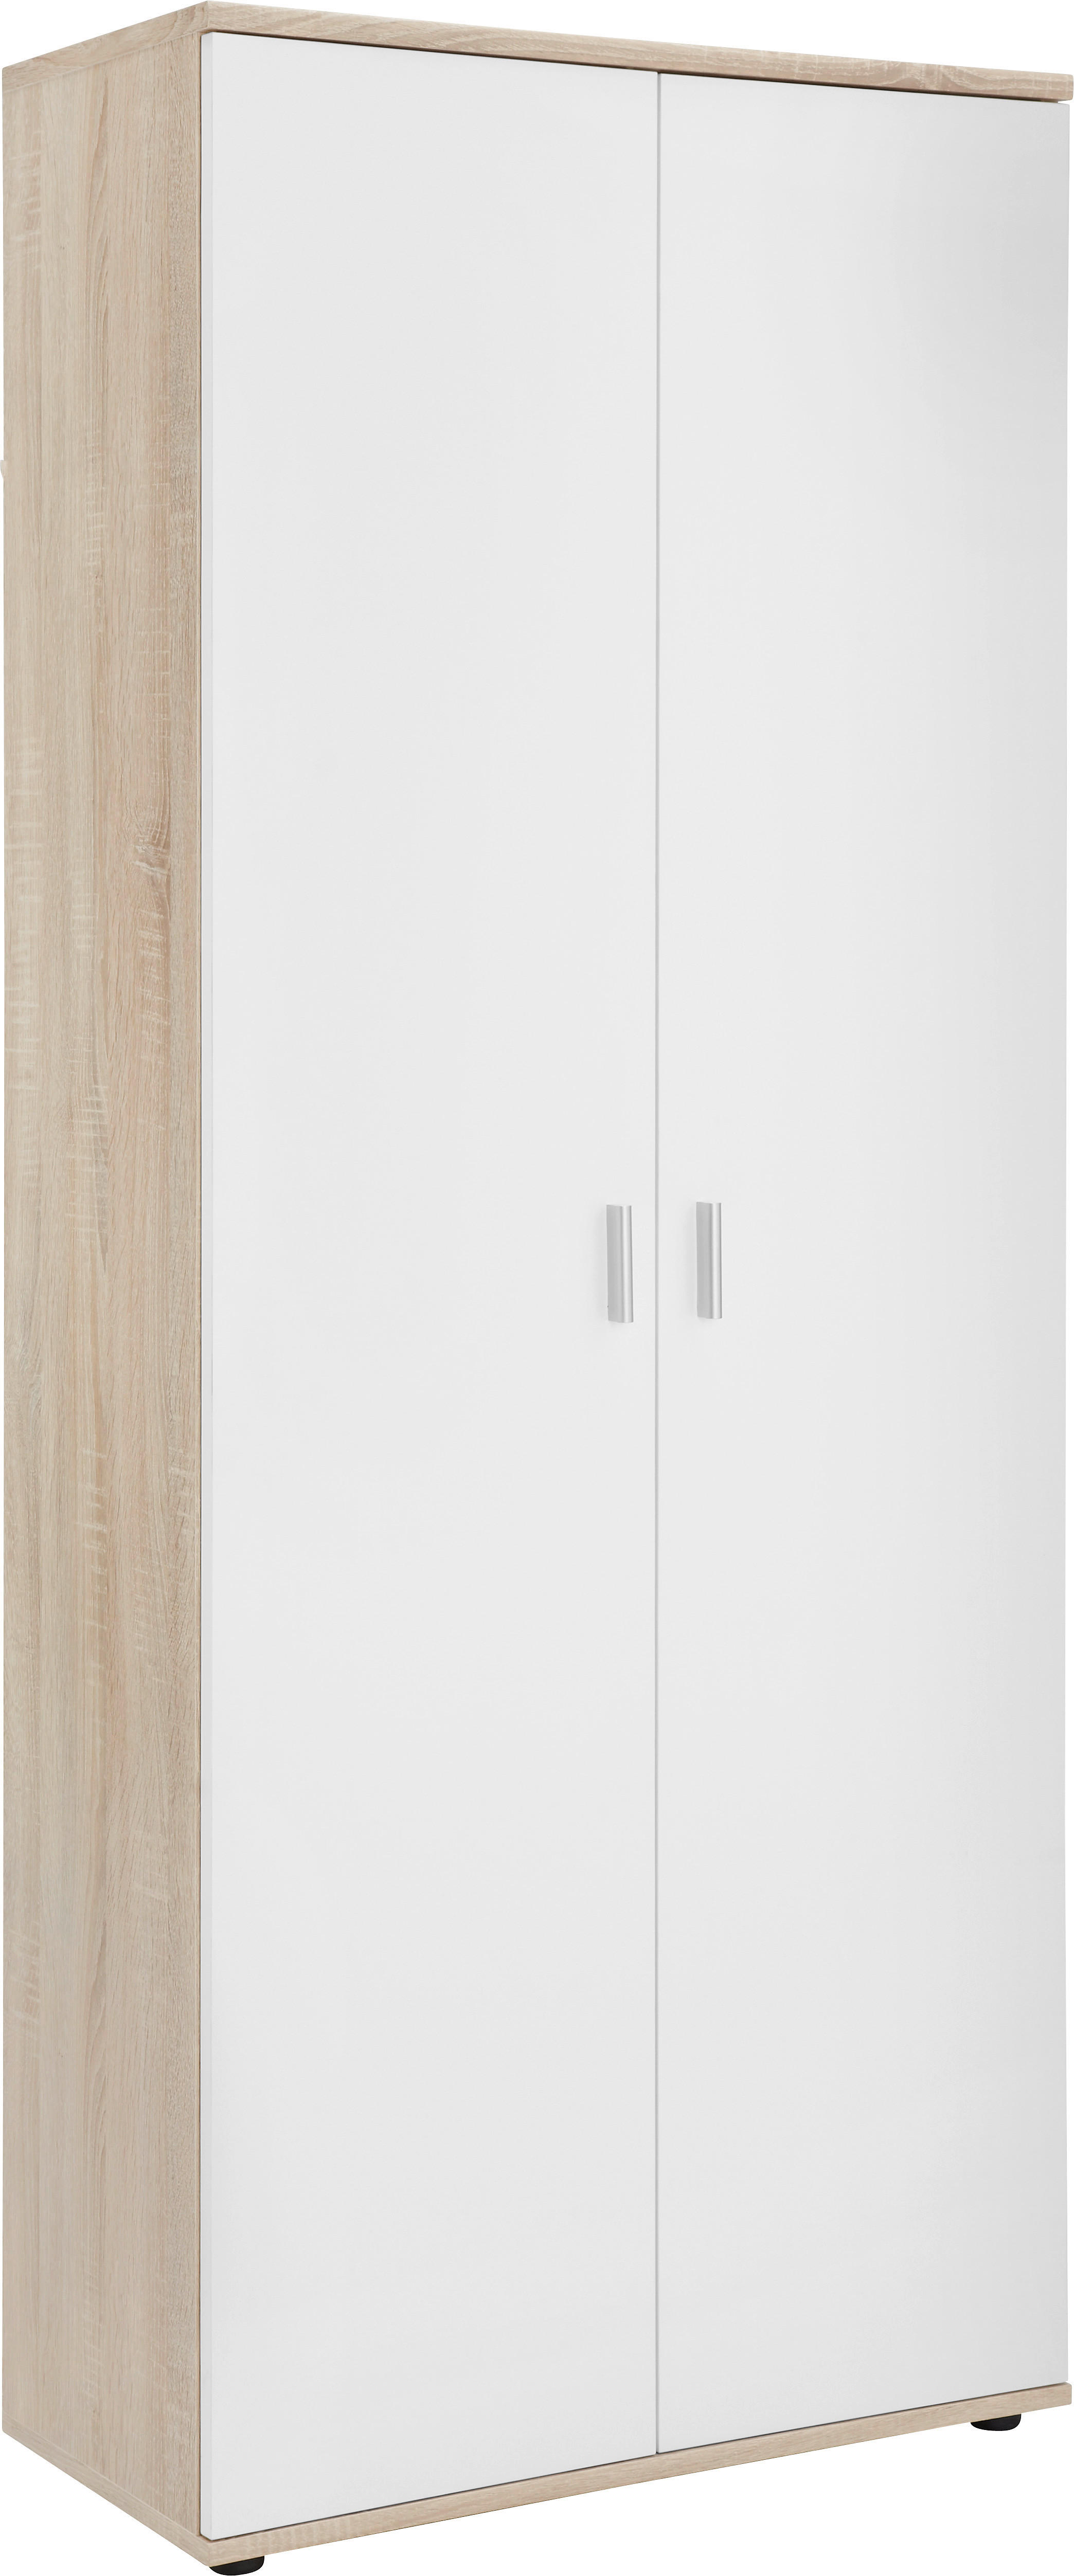 SCHUHSCHRANK Weiß, Eichefarben  - Eichefarben/Silberfarben, Design, Holzwerkstoff/Kunststoff (69/176/35cm)